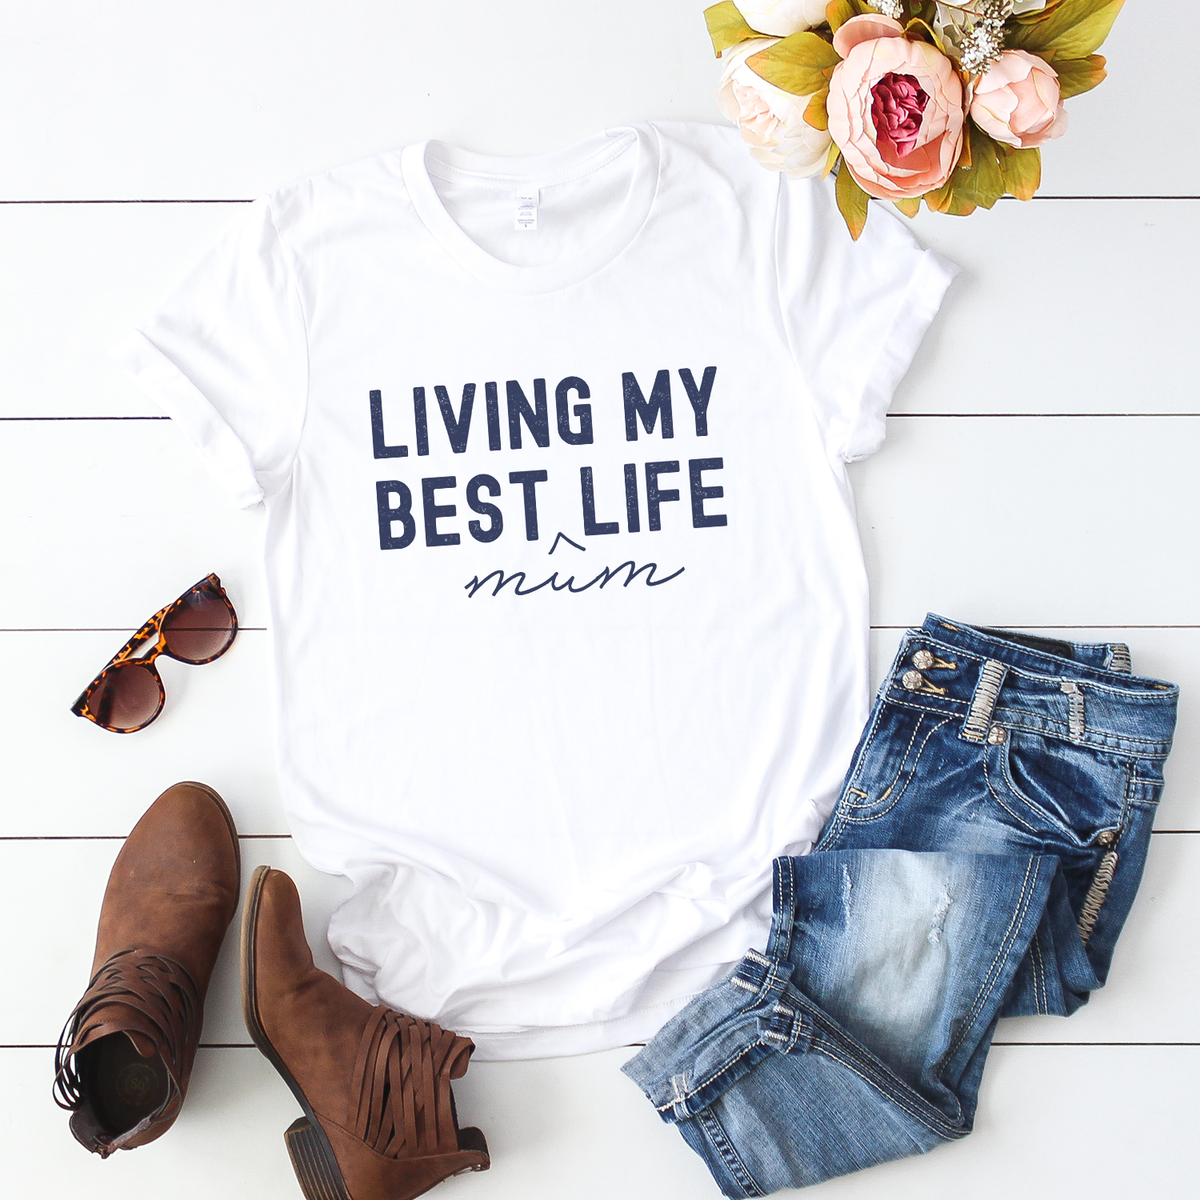 Living my best ^MUM life, casual white t-shirt